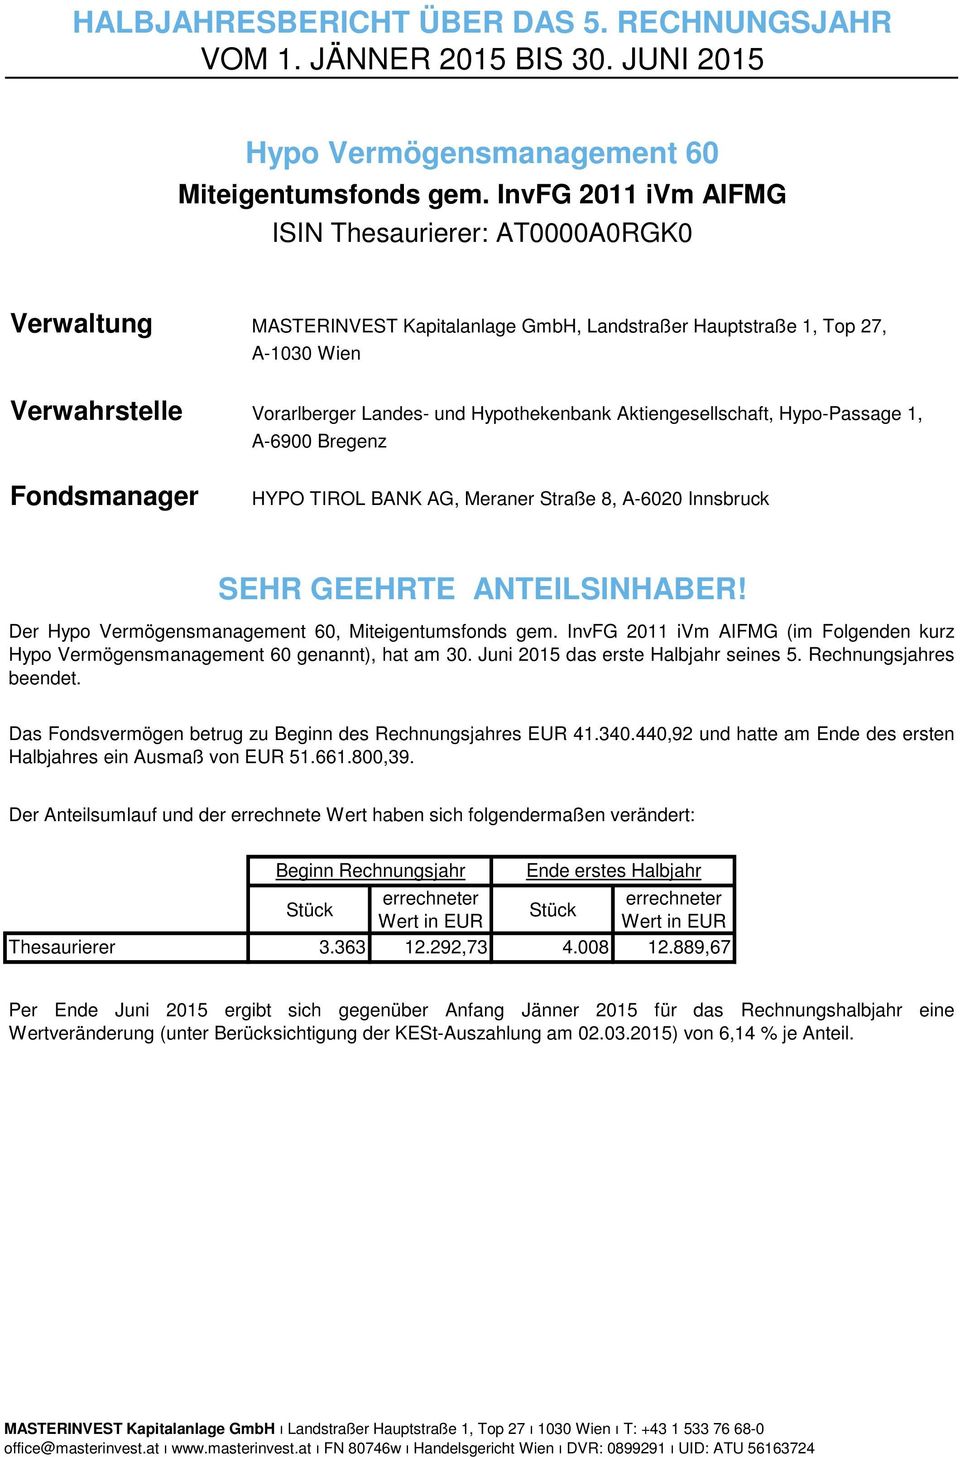 Aktiengesellschaft, Hypo-Passage 1, A-6900 Bregenz Fondsmanager HYPO TIROL BANK AG, Meraner Straße 8, A-6020 Innsbruck SEHR GEEHRTE ANTEILSINHABER!